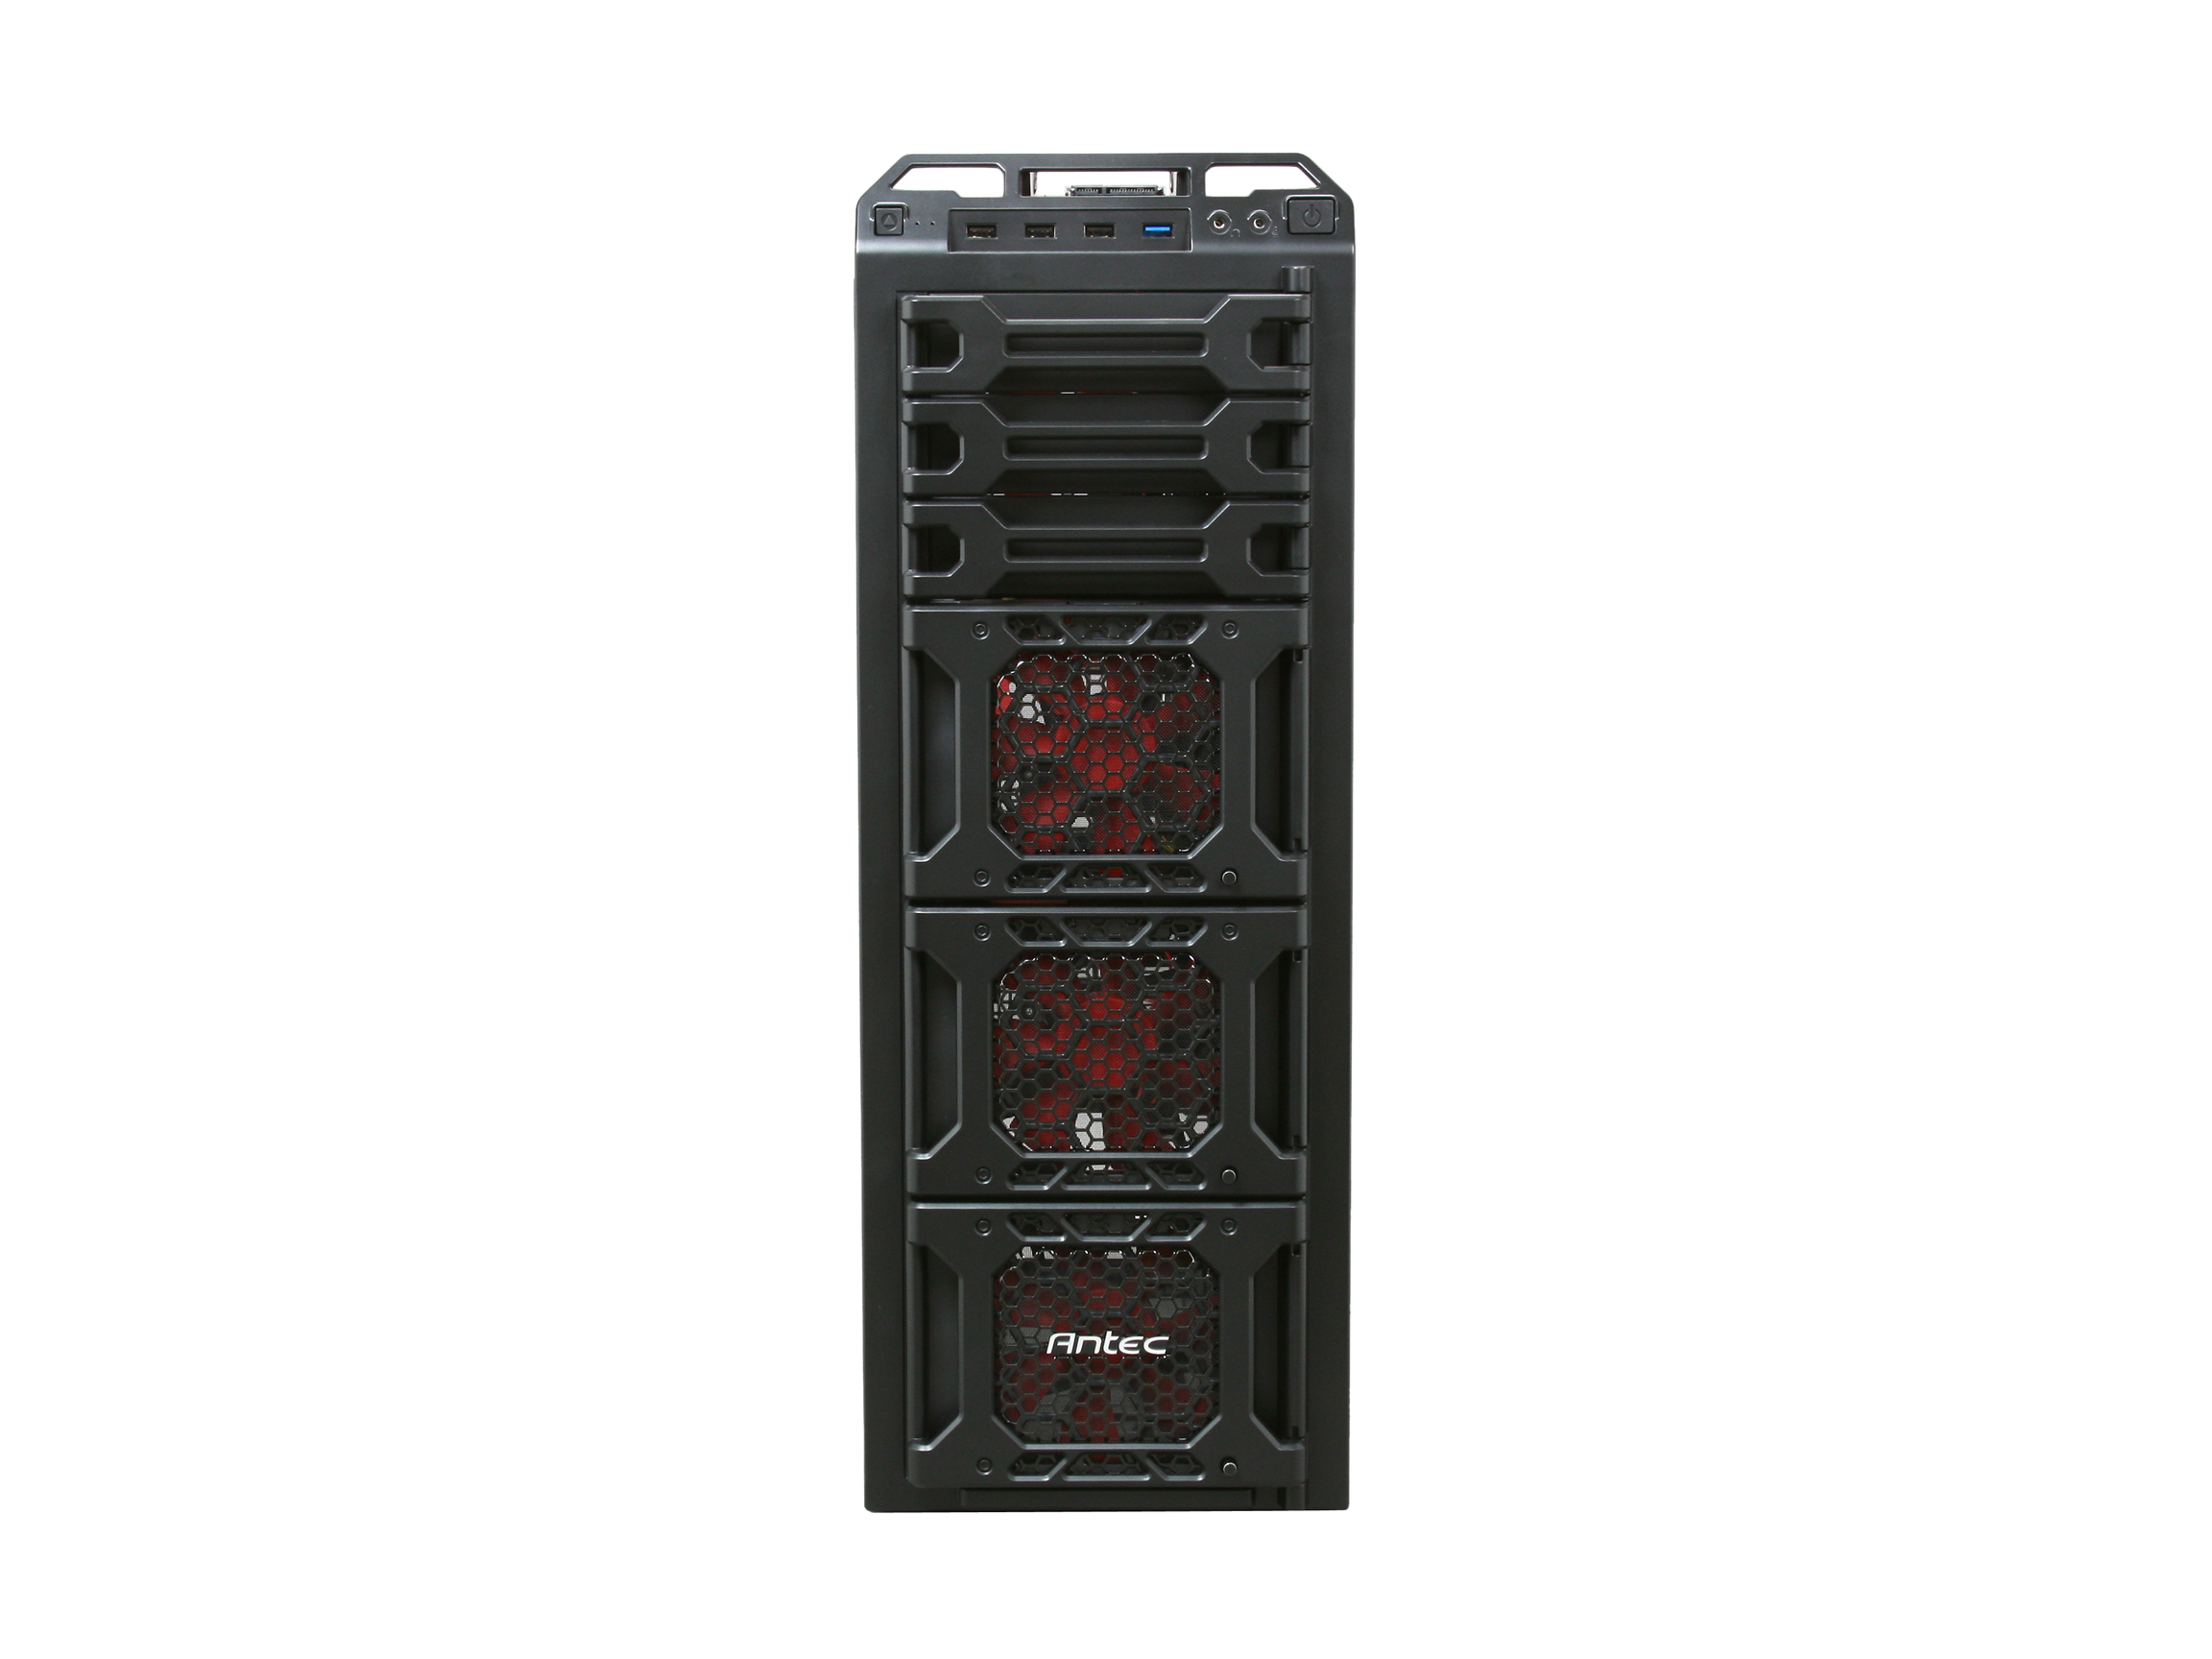 Antec DF 85 Black Steel / Plastic ATX Full Tower Computer Case